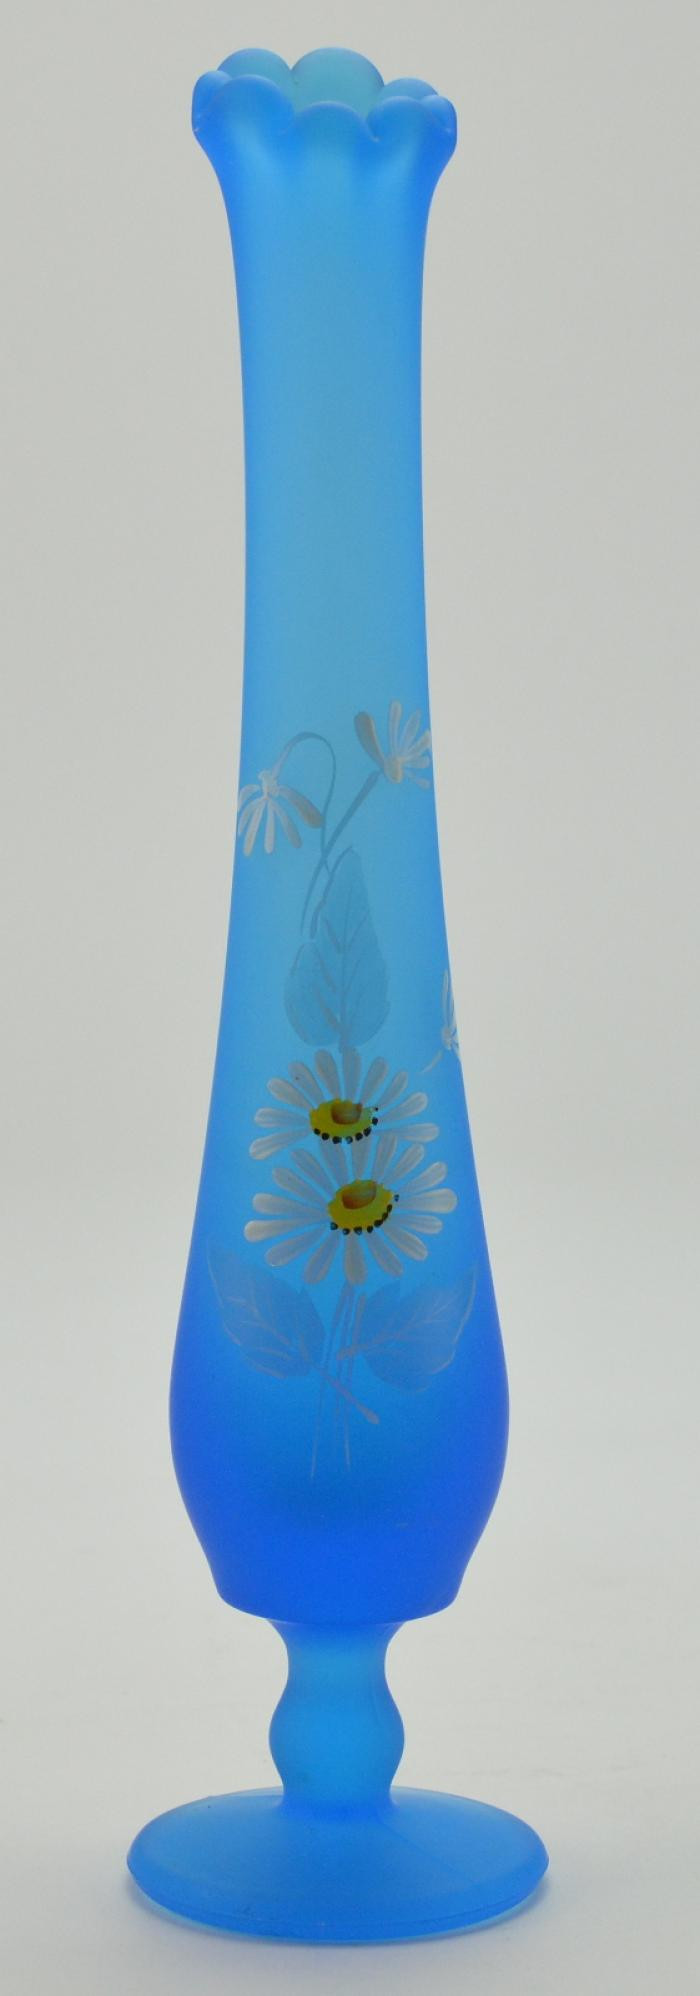 12 Elegant E O Brody Glass Vase 2024 free download e o brody glass vase of blue glass bud vase vase and cellar image avorcor com throughout blue gl bud vase and cellar image avorcor